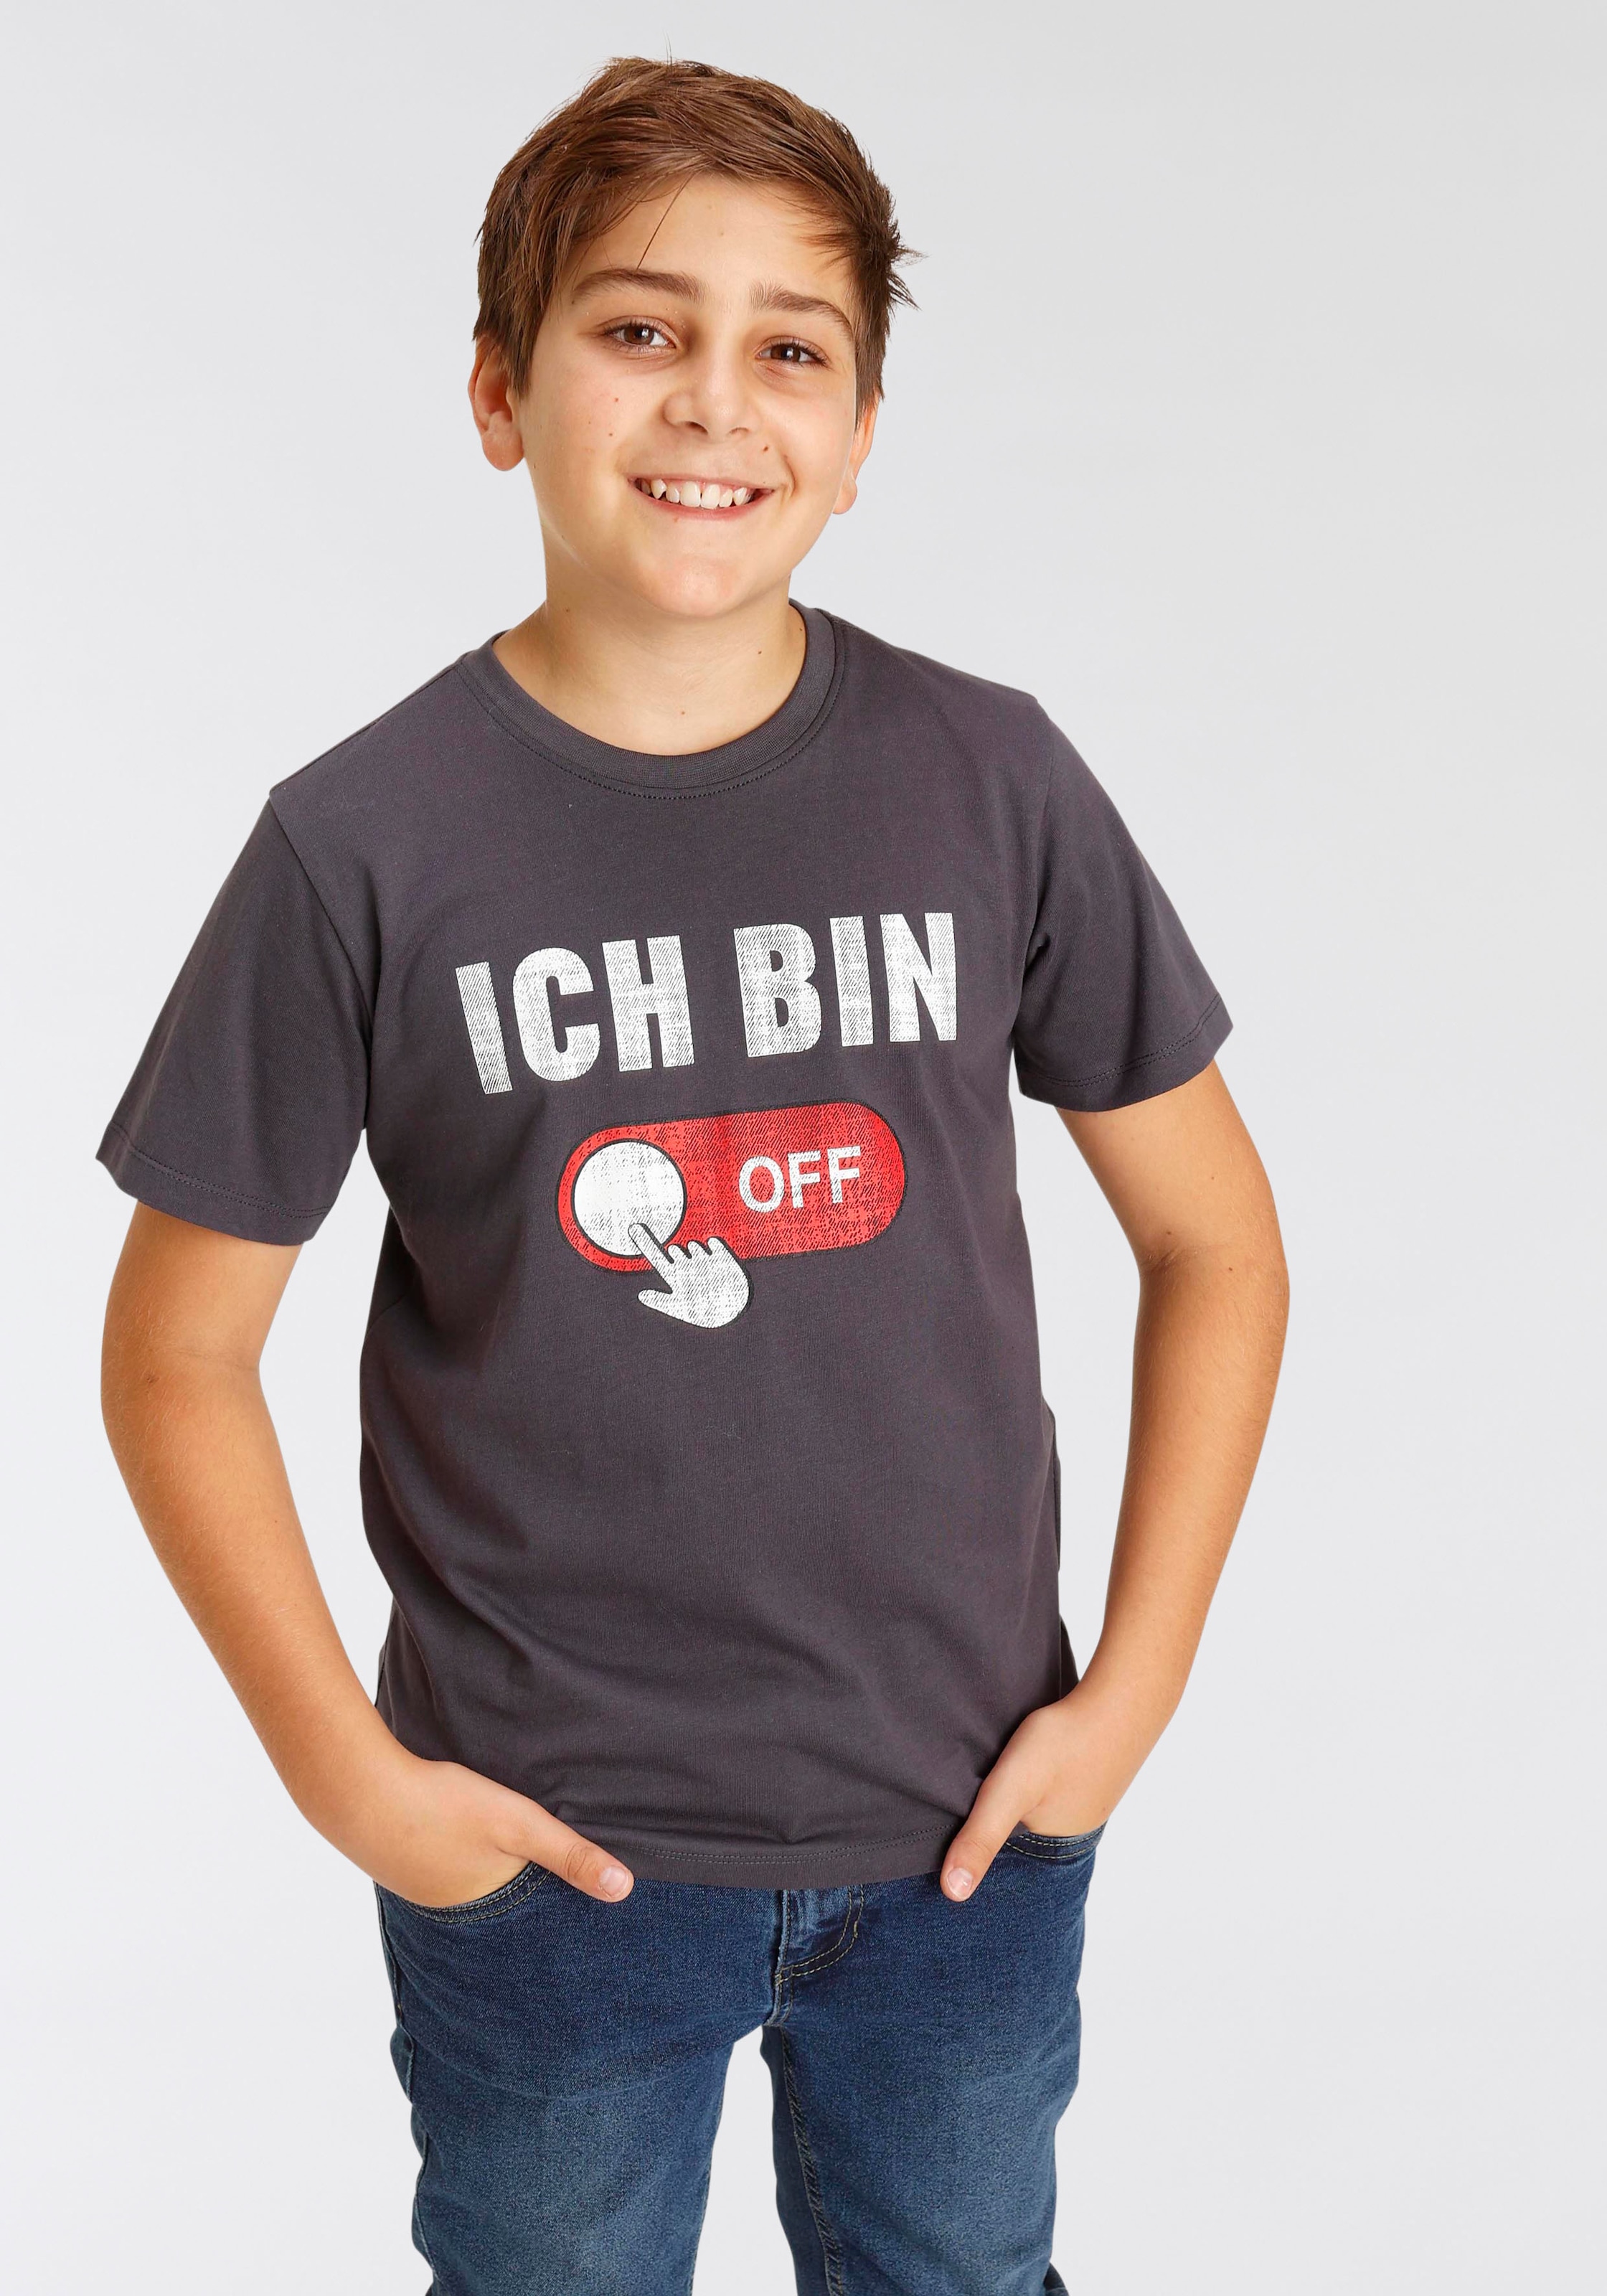 Sprücheshirt bei KIDSWORLD »ICH BIN T-Shirt OFF...«, OTTO